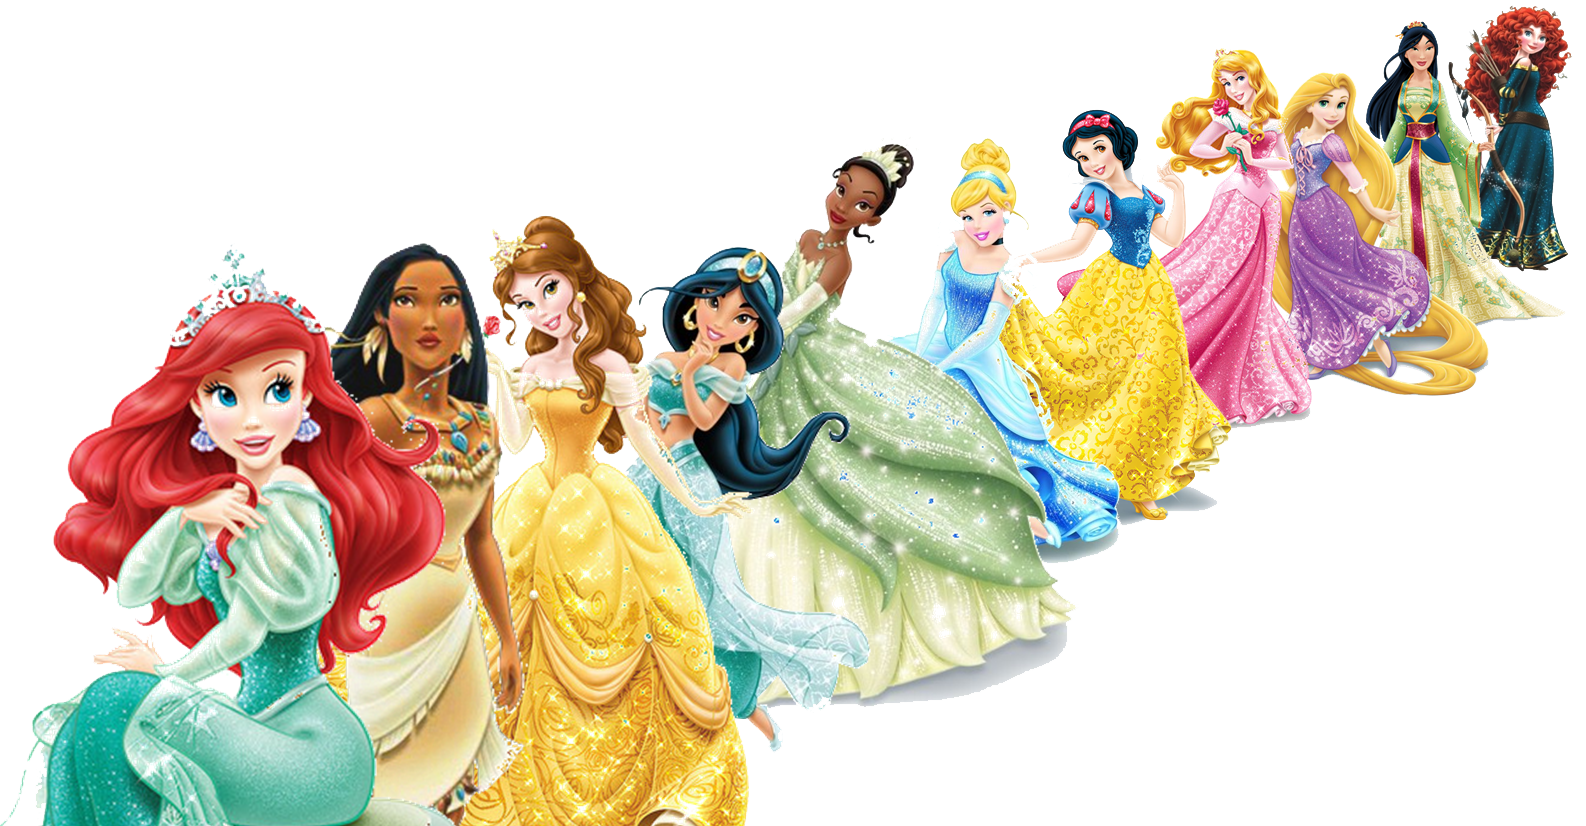 Disney Princesses Transparent Image